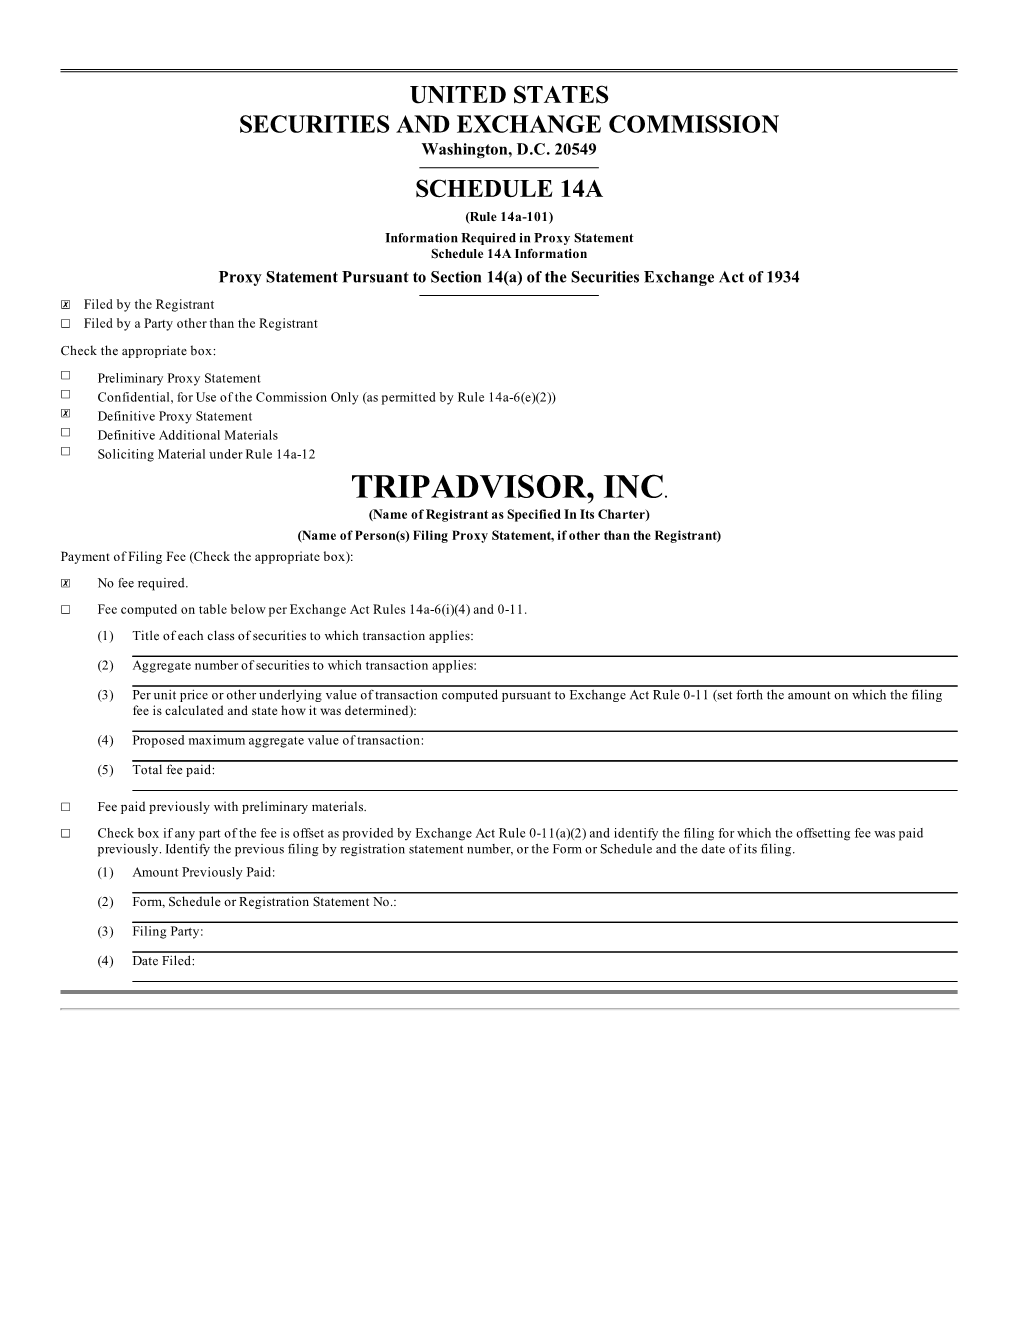 Tripadvisor, Inc